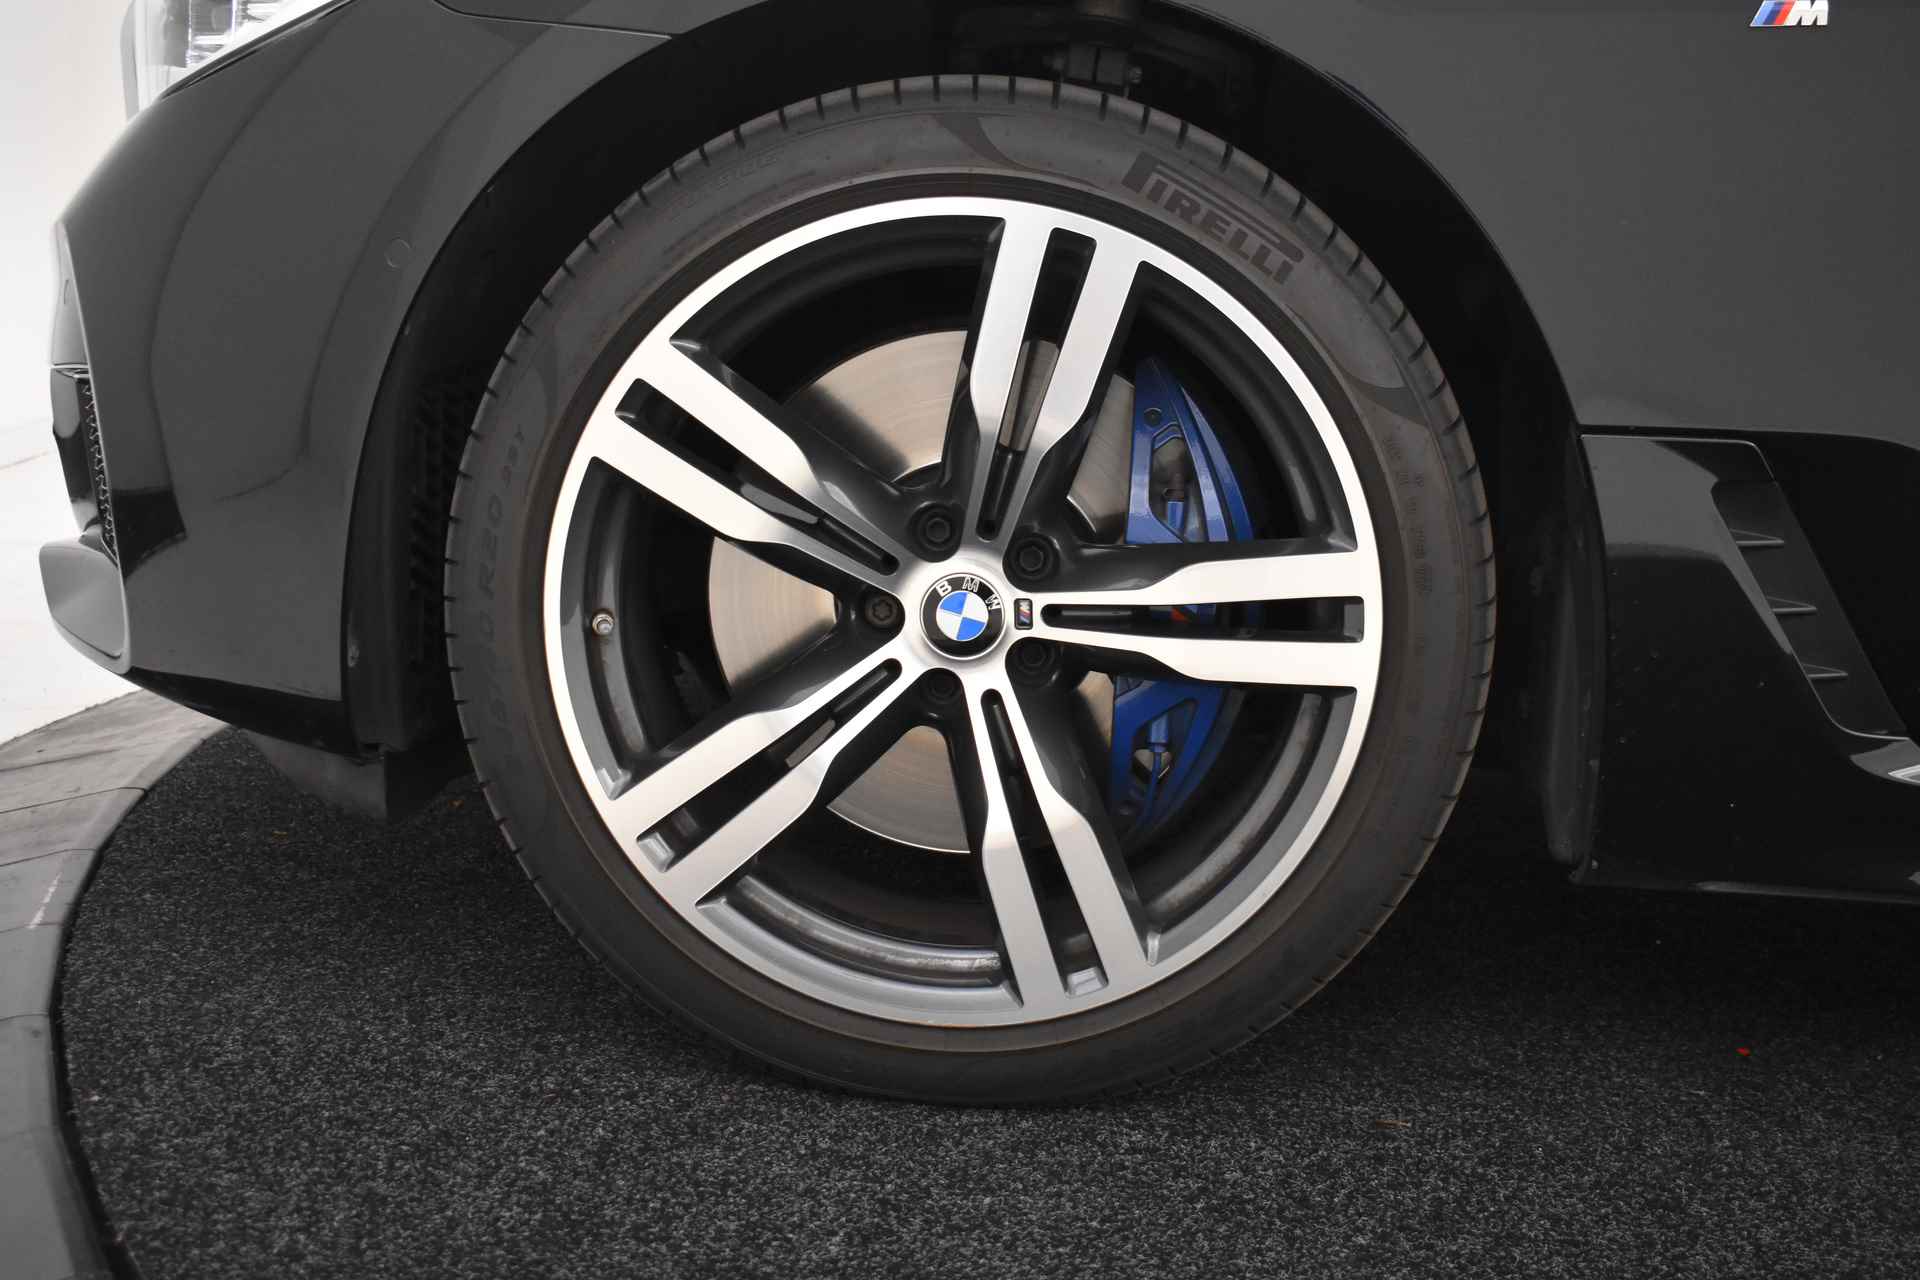 BMW 6 Serie Gran Turismo 640i High Executive M Sport Automaat / Panoramadak / Adaptieve LED / Active Cruise Control / Harman Kardon / Navigatie Professional / Comfort Access - 11/58